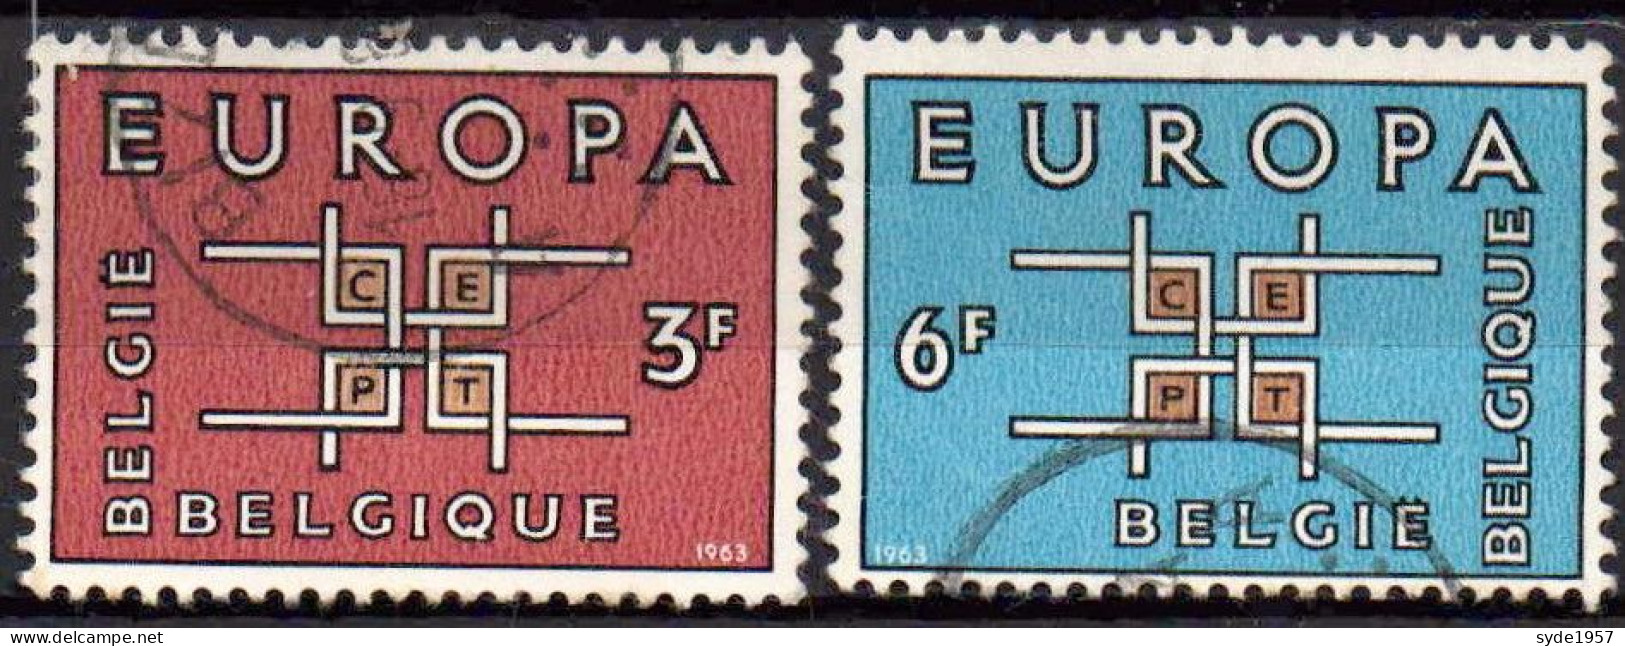 Belgique 1963, Europa COB 1261-1262 - Usati